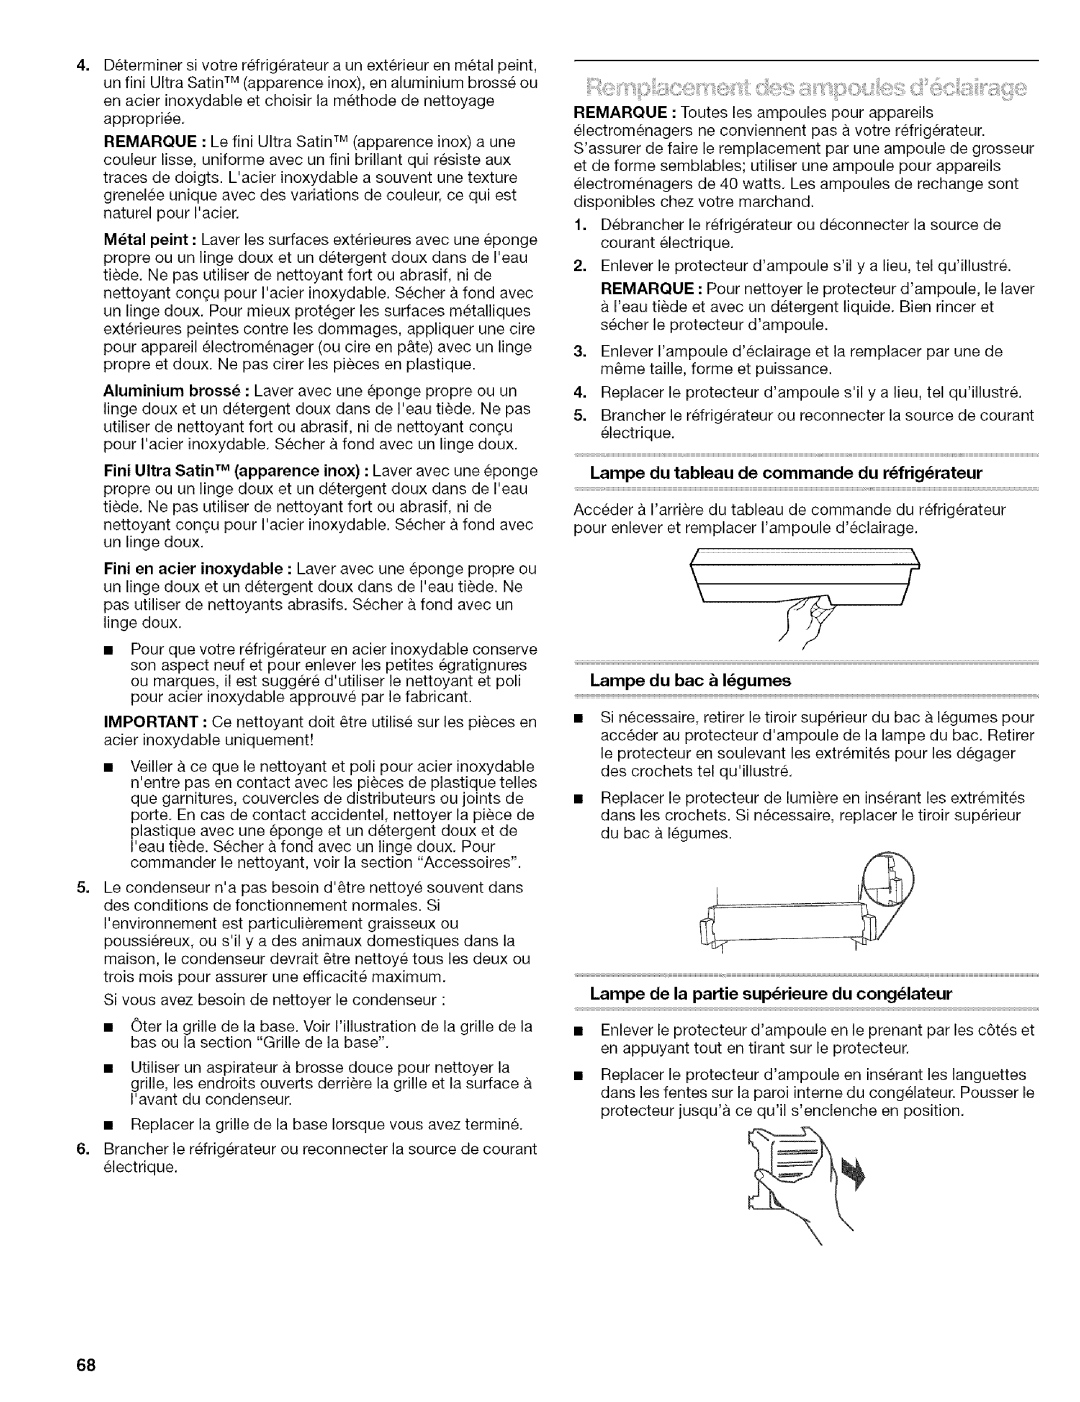 Kenmore 2305761A manual Lampe du bac & I gumes, Lampe du tableau de commande du r_frig_rateur 